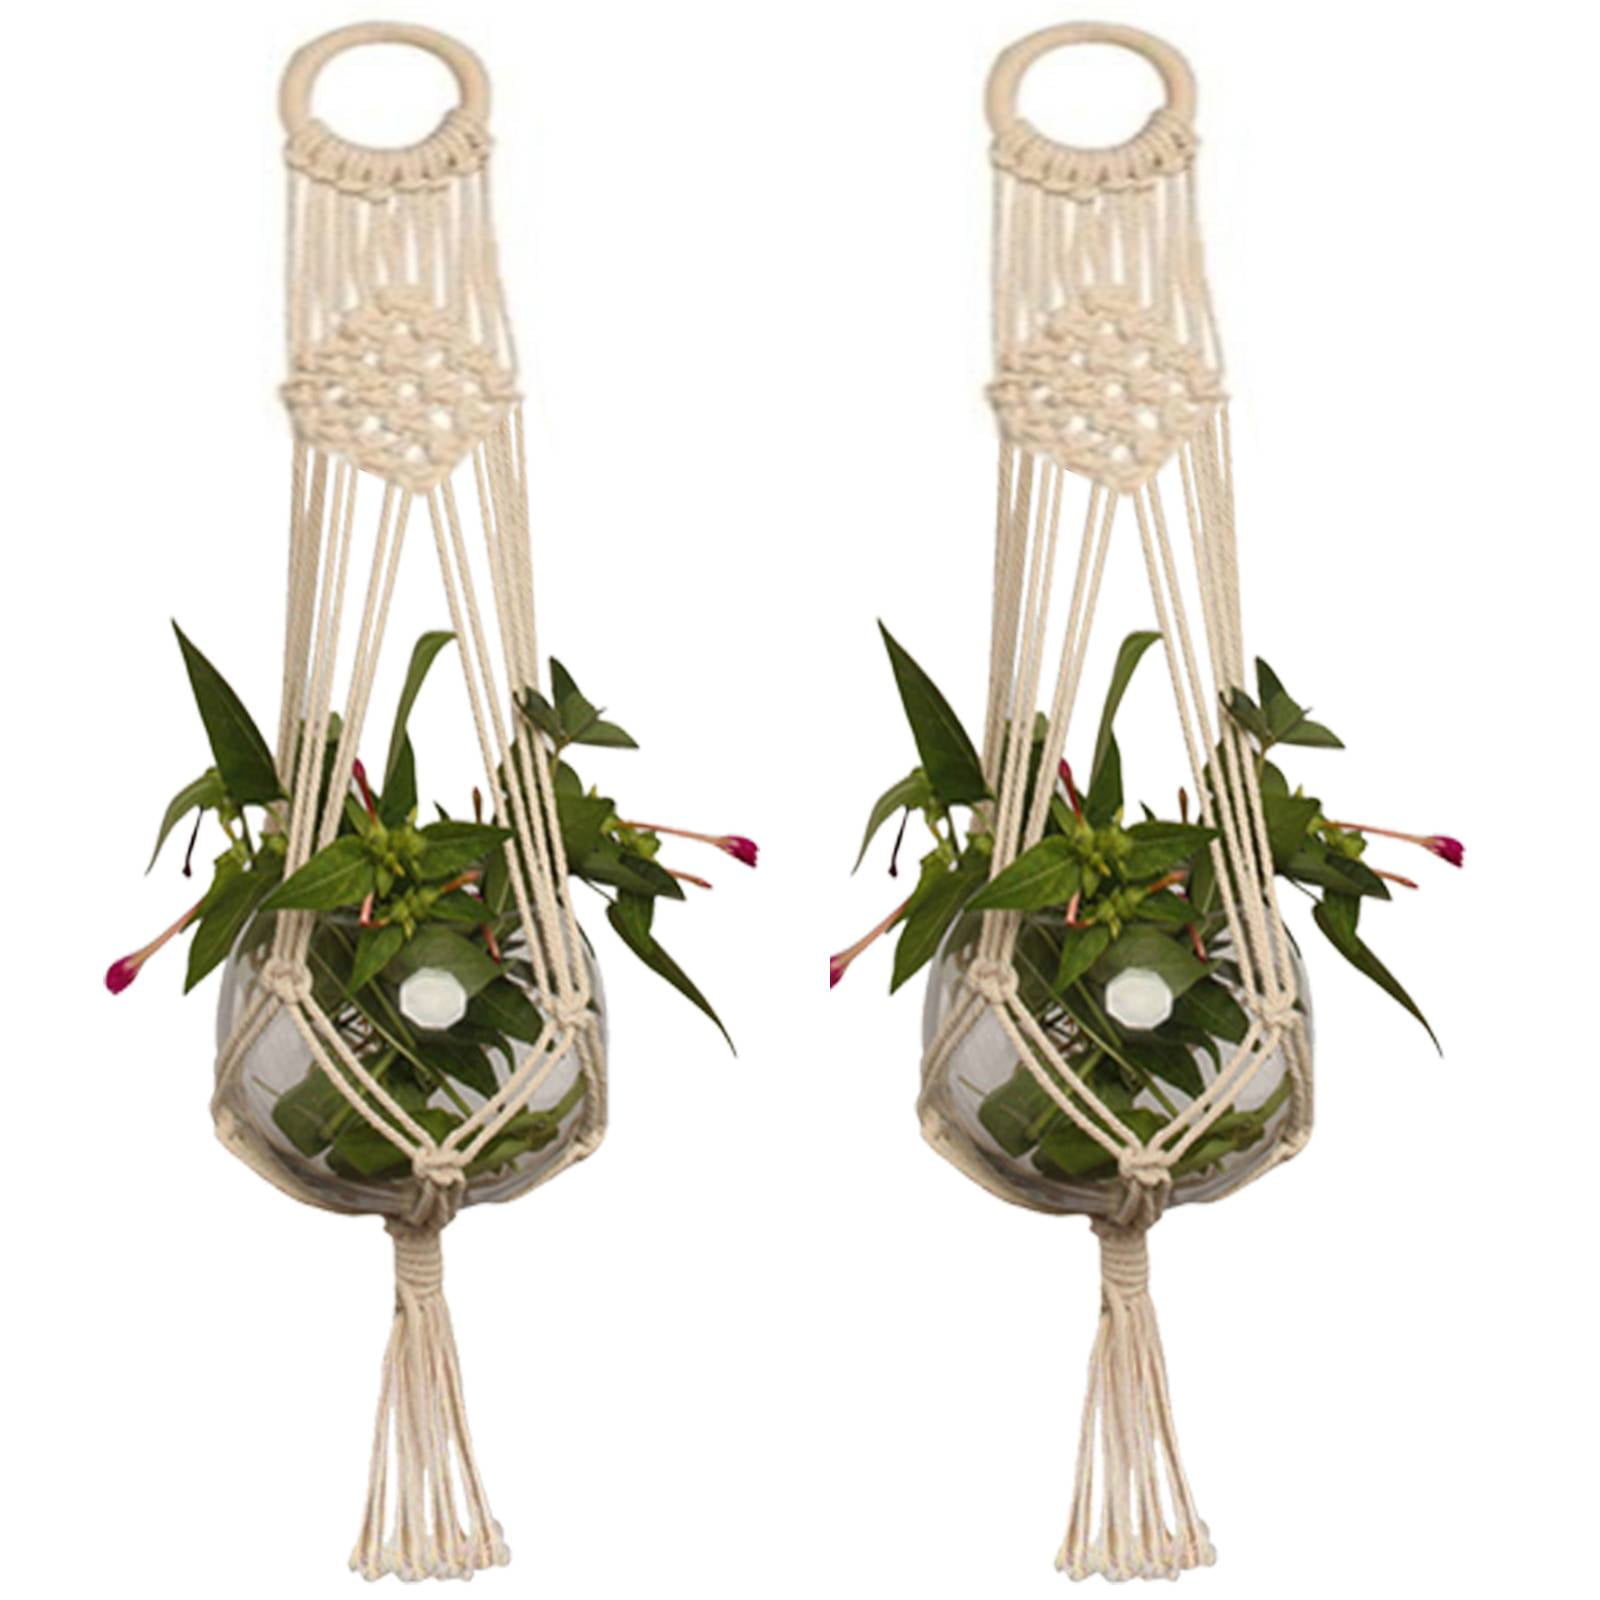 Details about   Plant Hanger Macrame Hanging Planter Basket Rope Flower Decor Holder Pot A4U2 